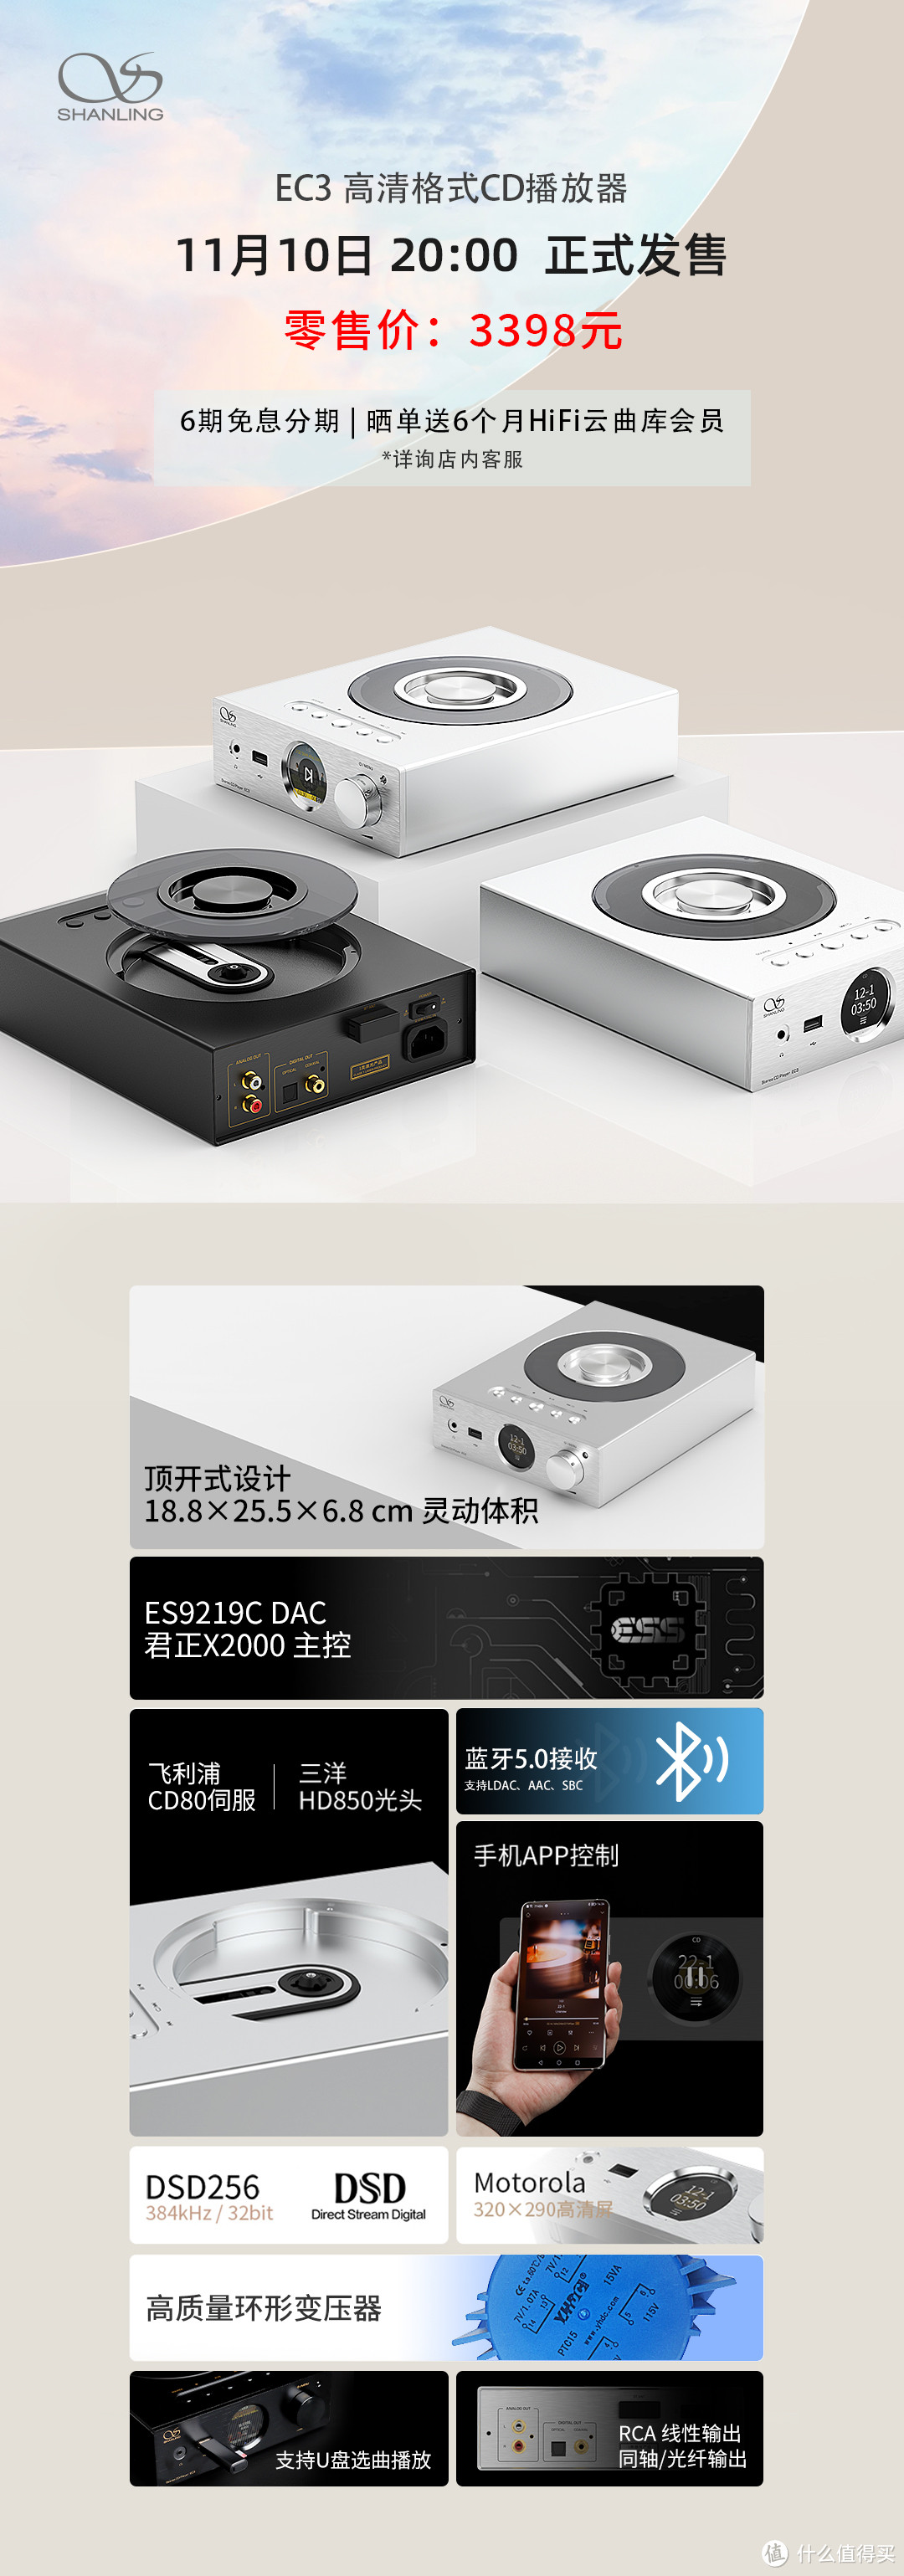 【行业资讯】山灵EC3 CD播放机、UA1s便携解码耳放正式上市